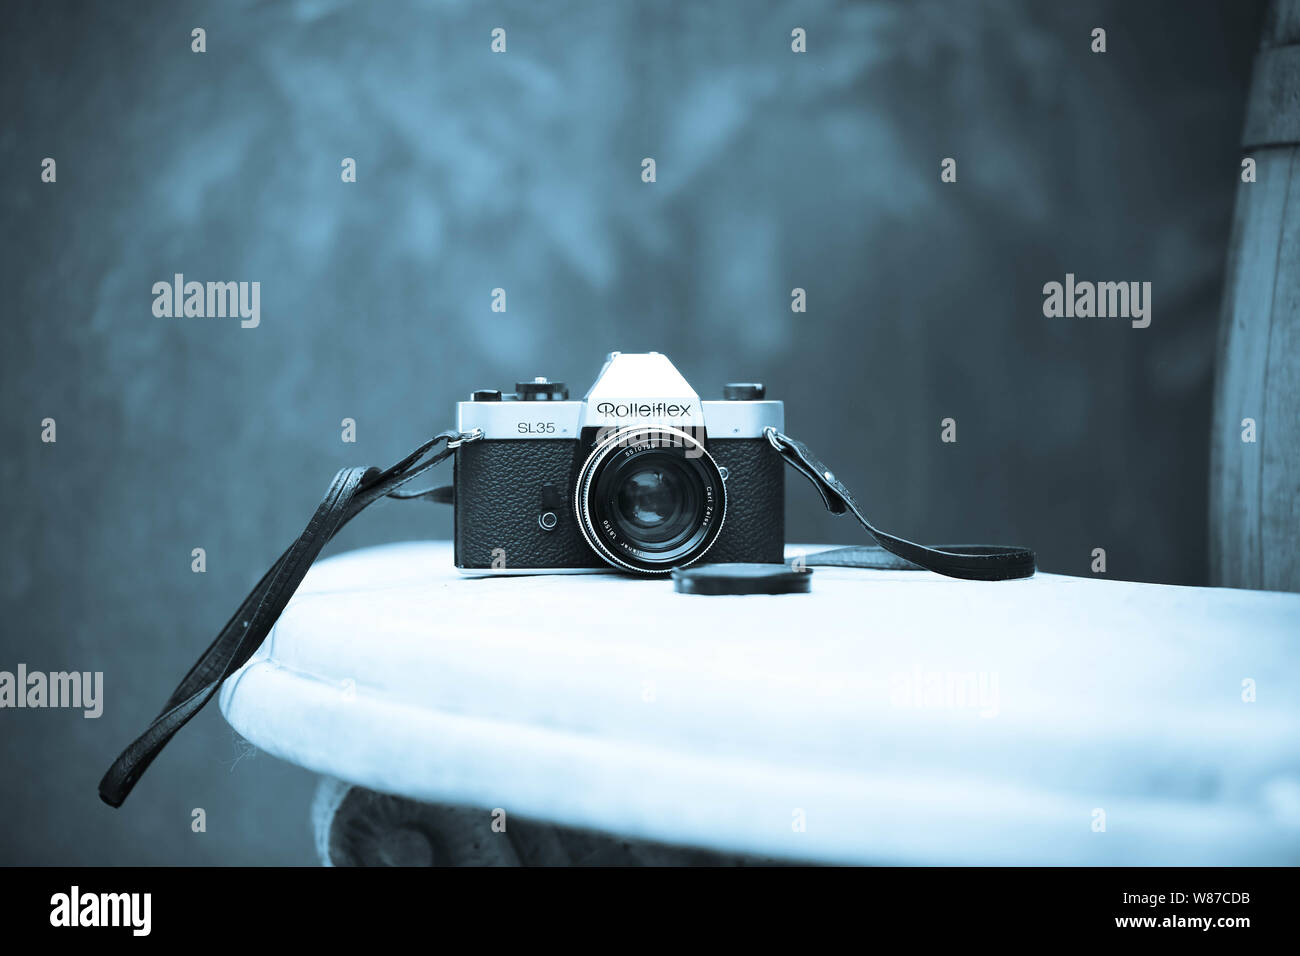 Analoge Kamera Rolleiflex SL35 Carl Zeiss Stock Photo